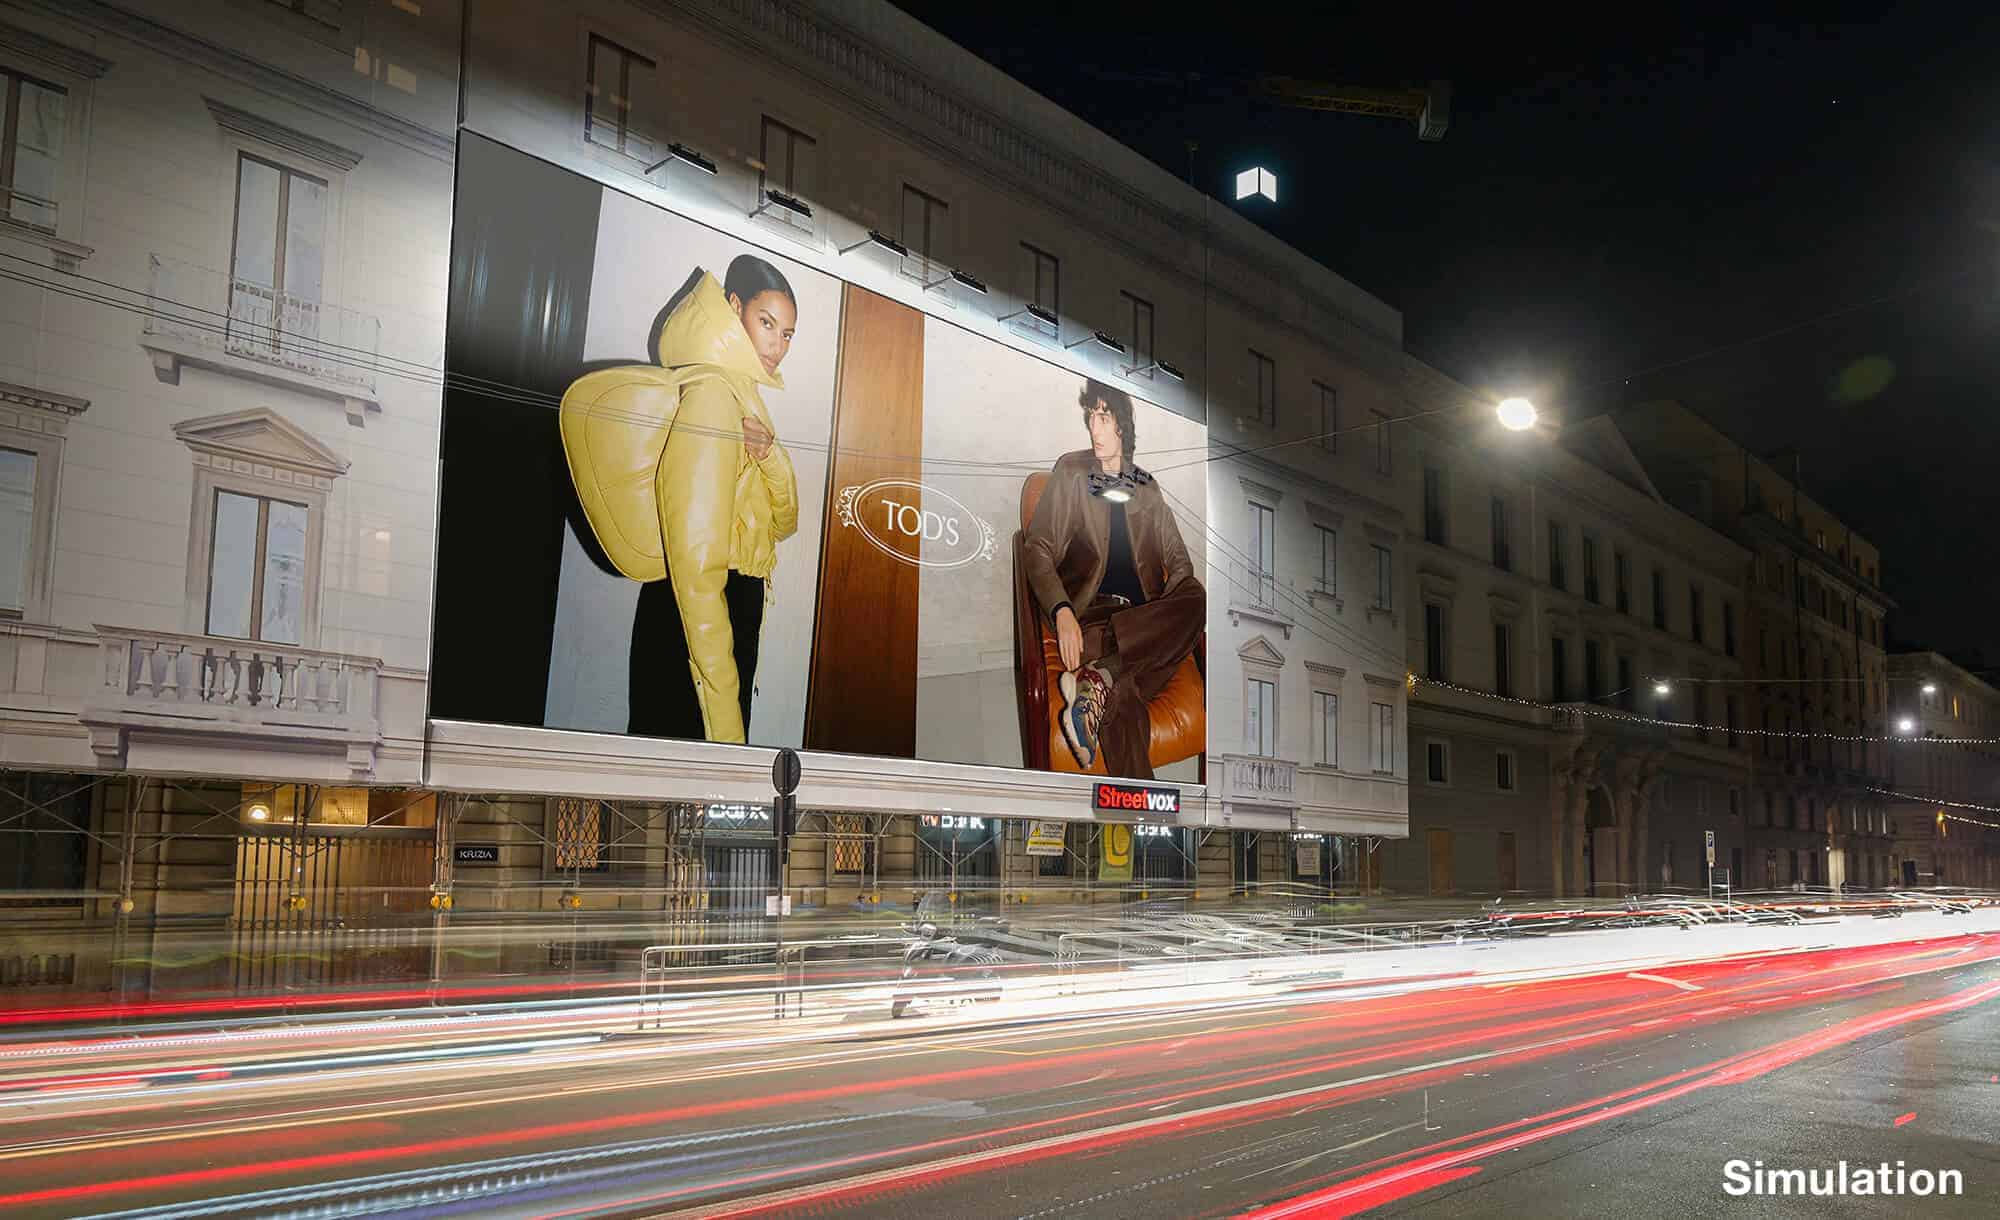 Maxi Affissione a Milano in Corso Venezia 54 con Tod's (Fashion)